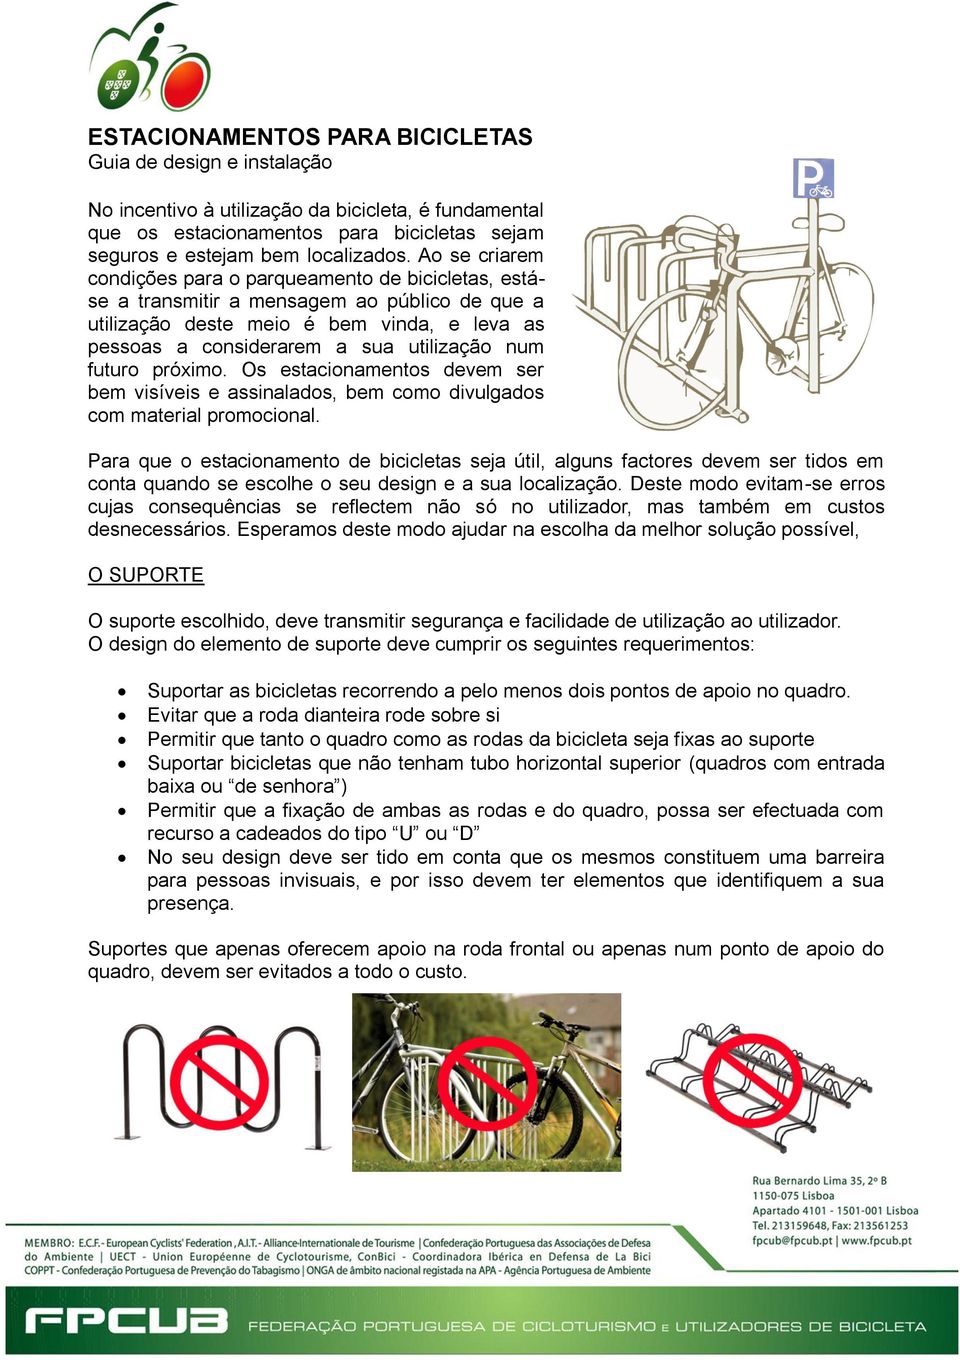 Ao se criarem condições para o parqueamento de bicicletas, estáse a transmitir a mensagem ao público de que a utilização deste meio é bem vinda, e leva as pessoas a considerarem a sua utilização num